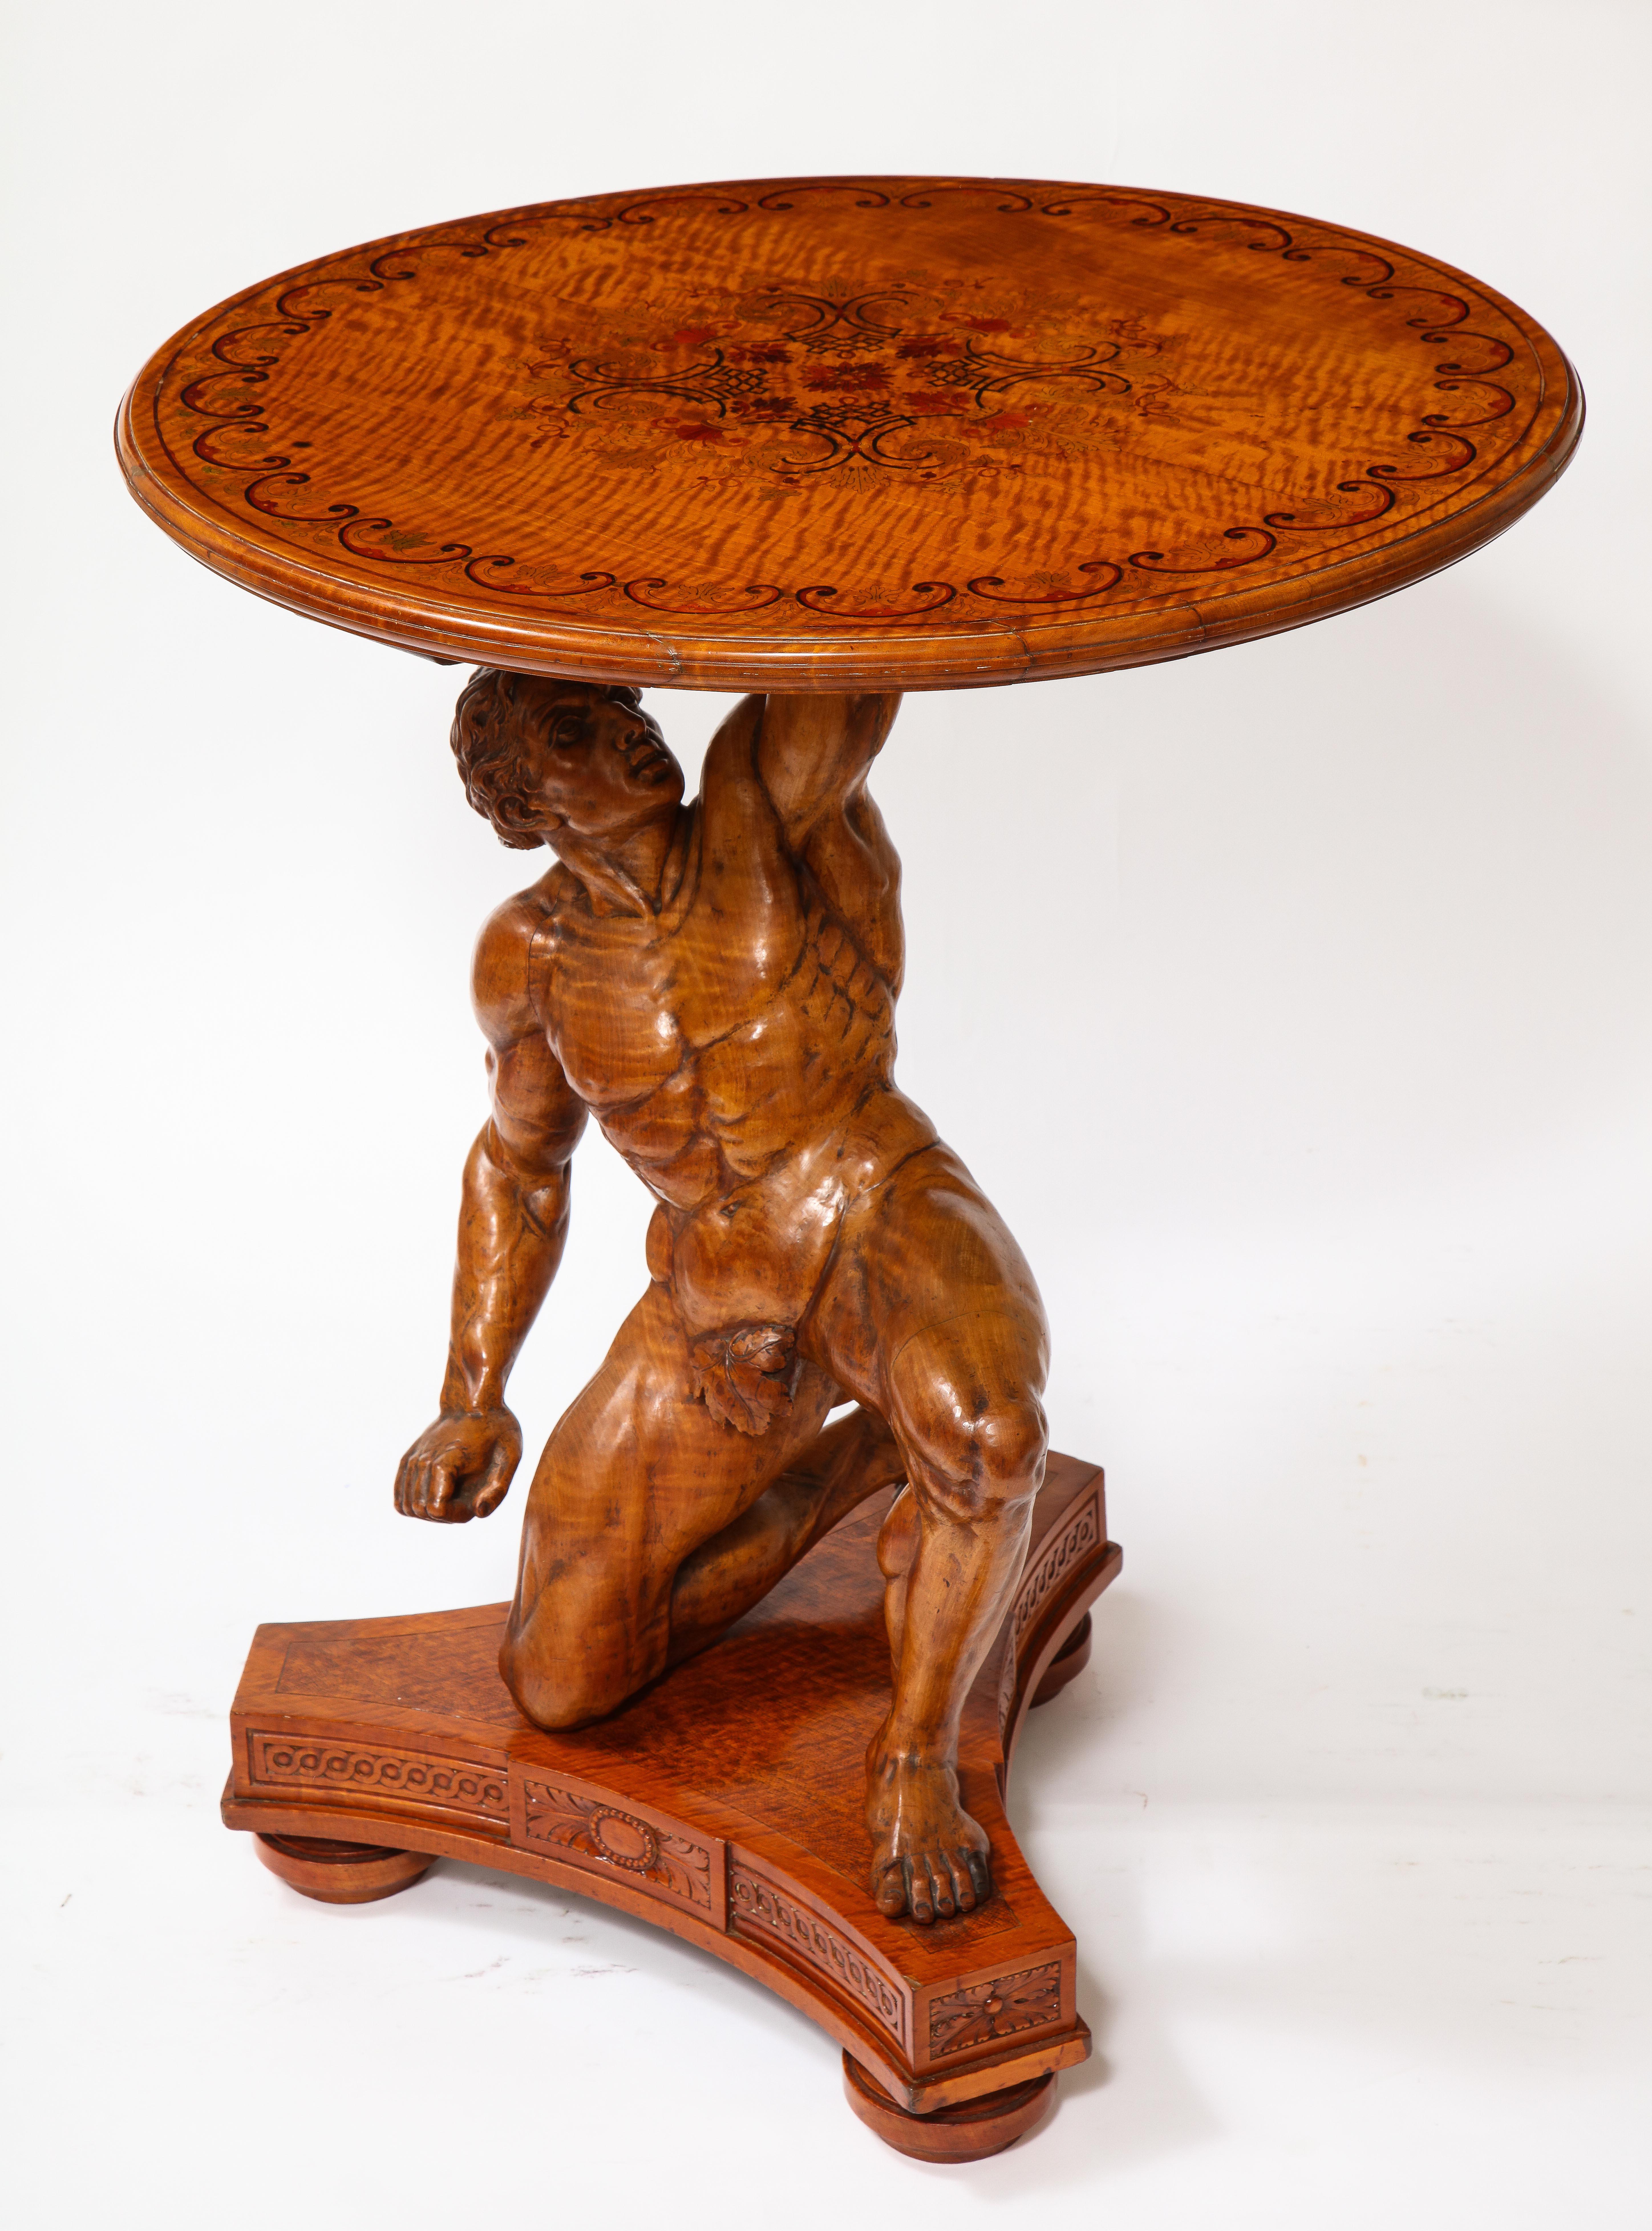 Une fabuleuse table d'atlas en bois sculpté à la main et en marqueterie du 19e siècle, signée J. Plucknett & Co. Warwick, Angleterre. La figure d'Atlas, magnifiquement sculptée à la main, est agenouillée sur une base triangulaire ornée de motifs en